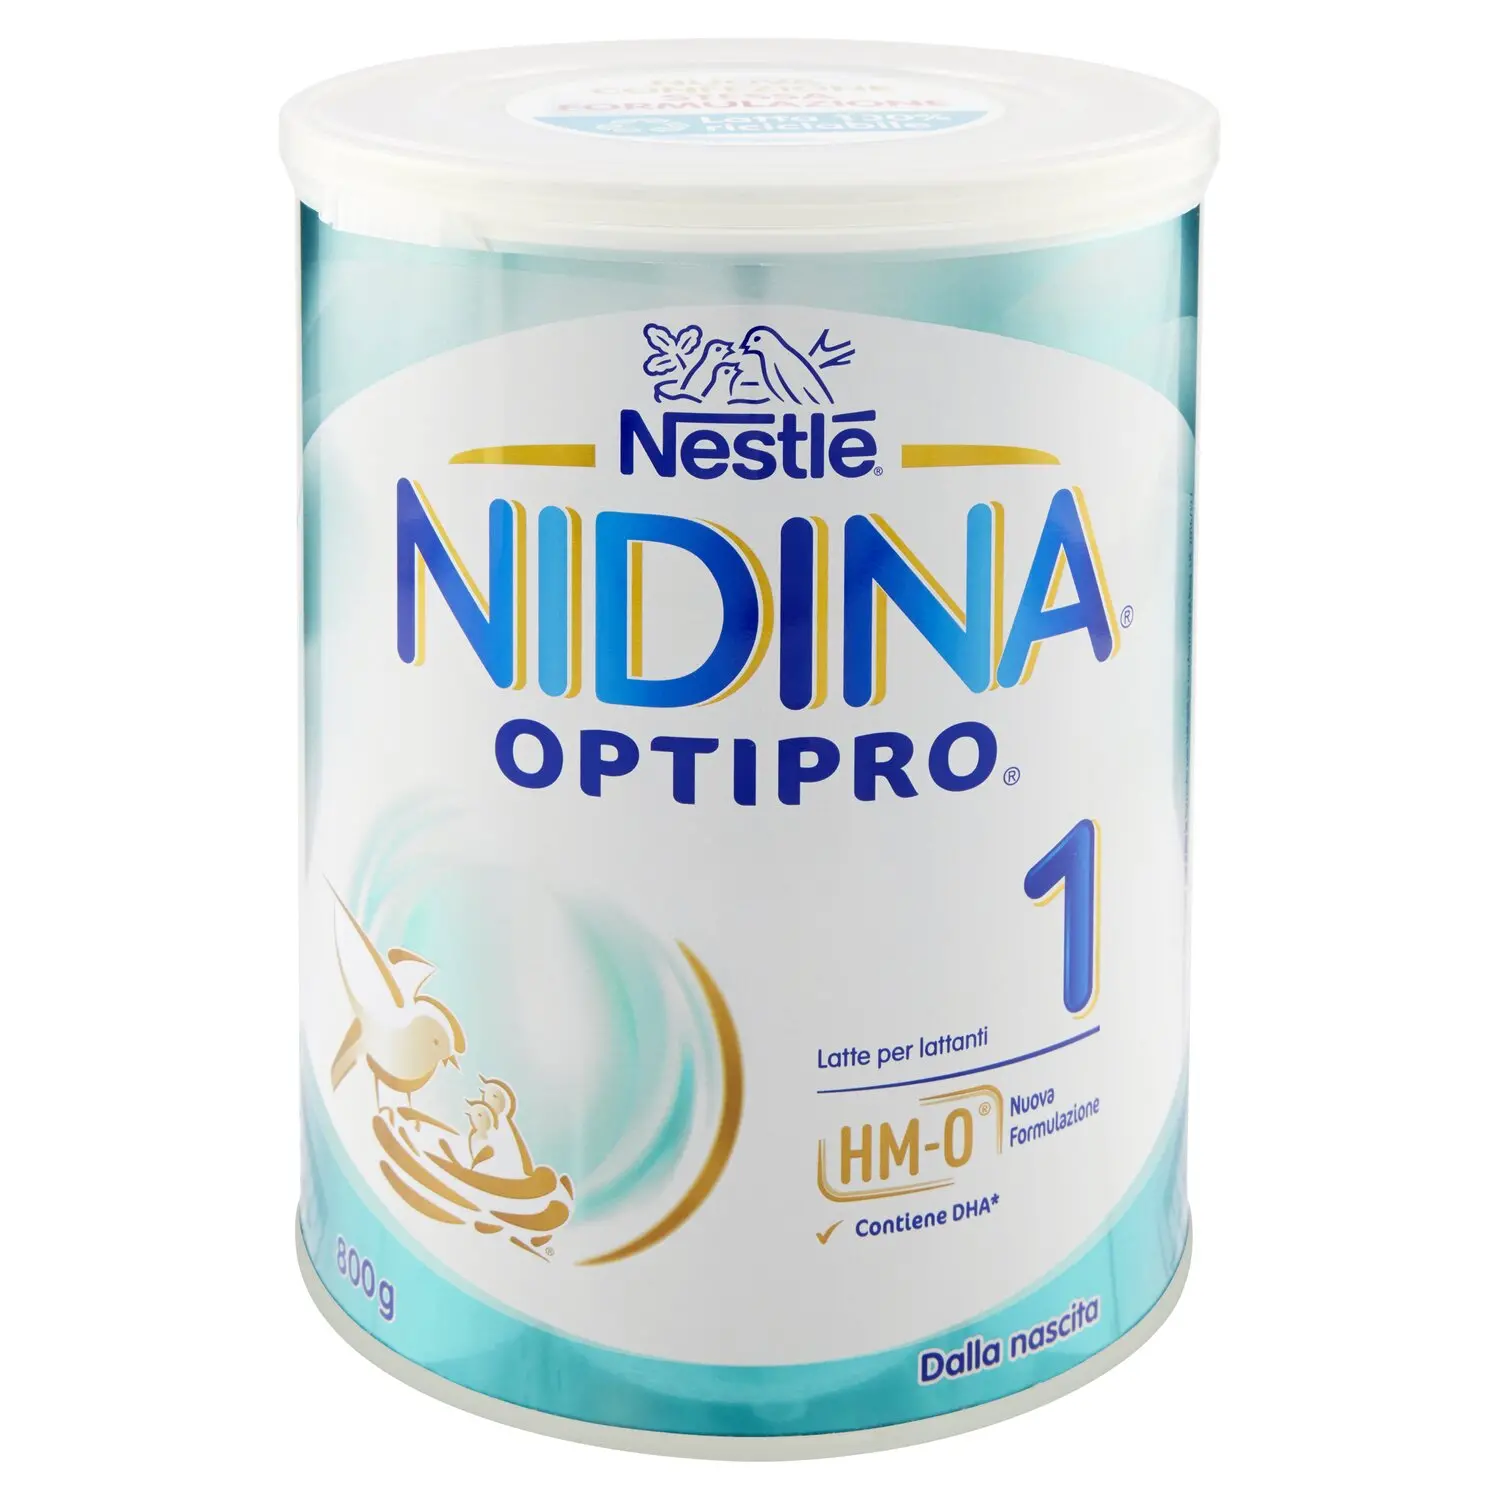 Latte in polvere NESTLE NIDINA 2 800g - Spesaldo la spesa online